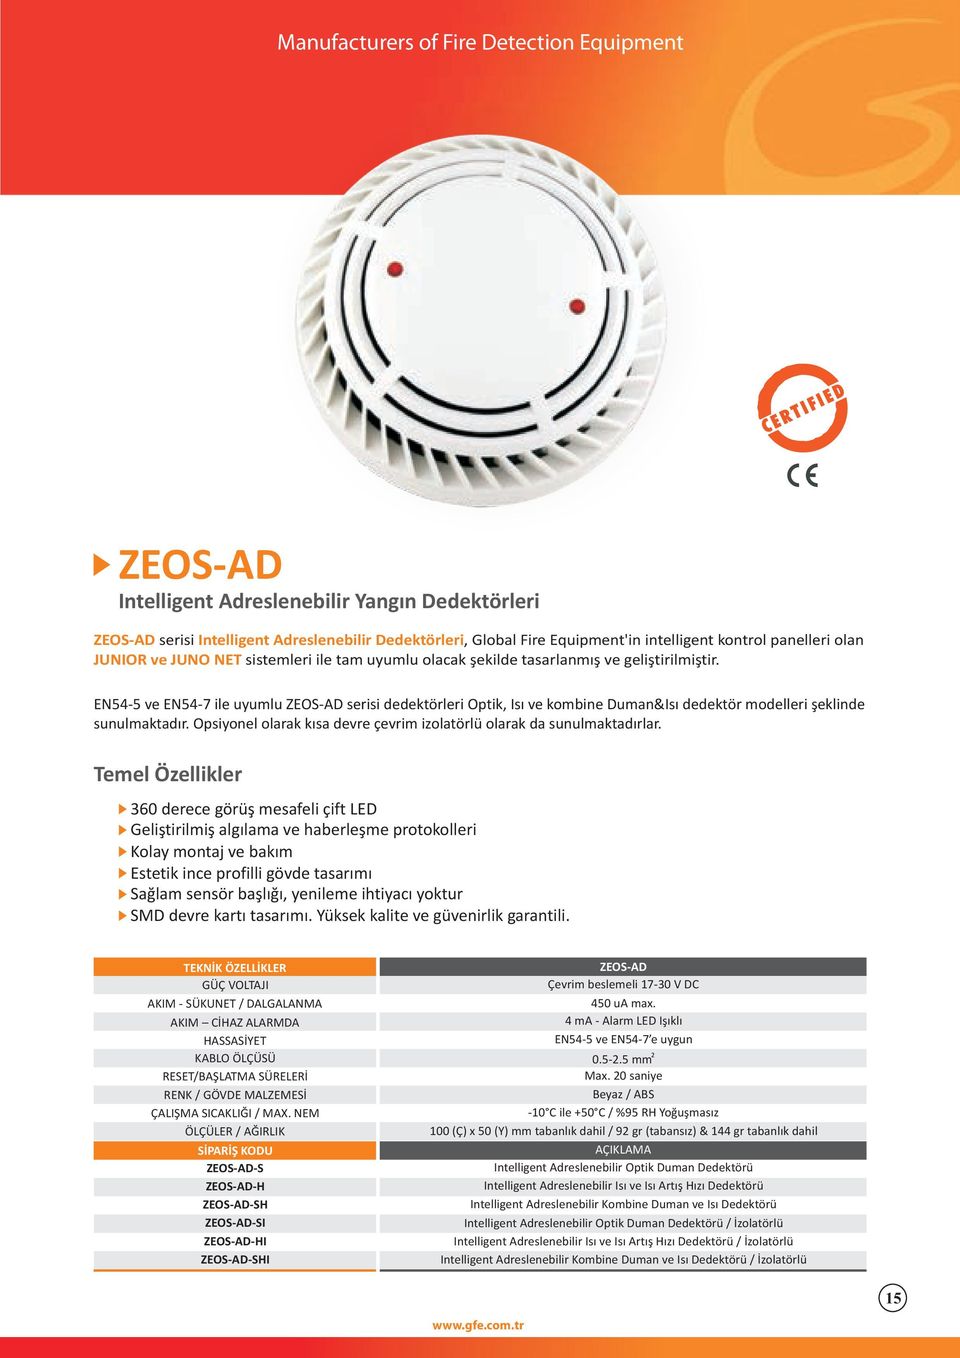 EN54-5 ve EN54-7 ile uyumlu ZEOS-AD serisi dedektörleri Optik, Isý ve kombine Duman&Isý dedektör modelleri þeklinde sunulmaktadýr.